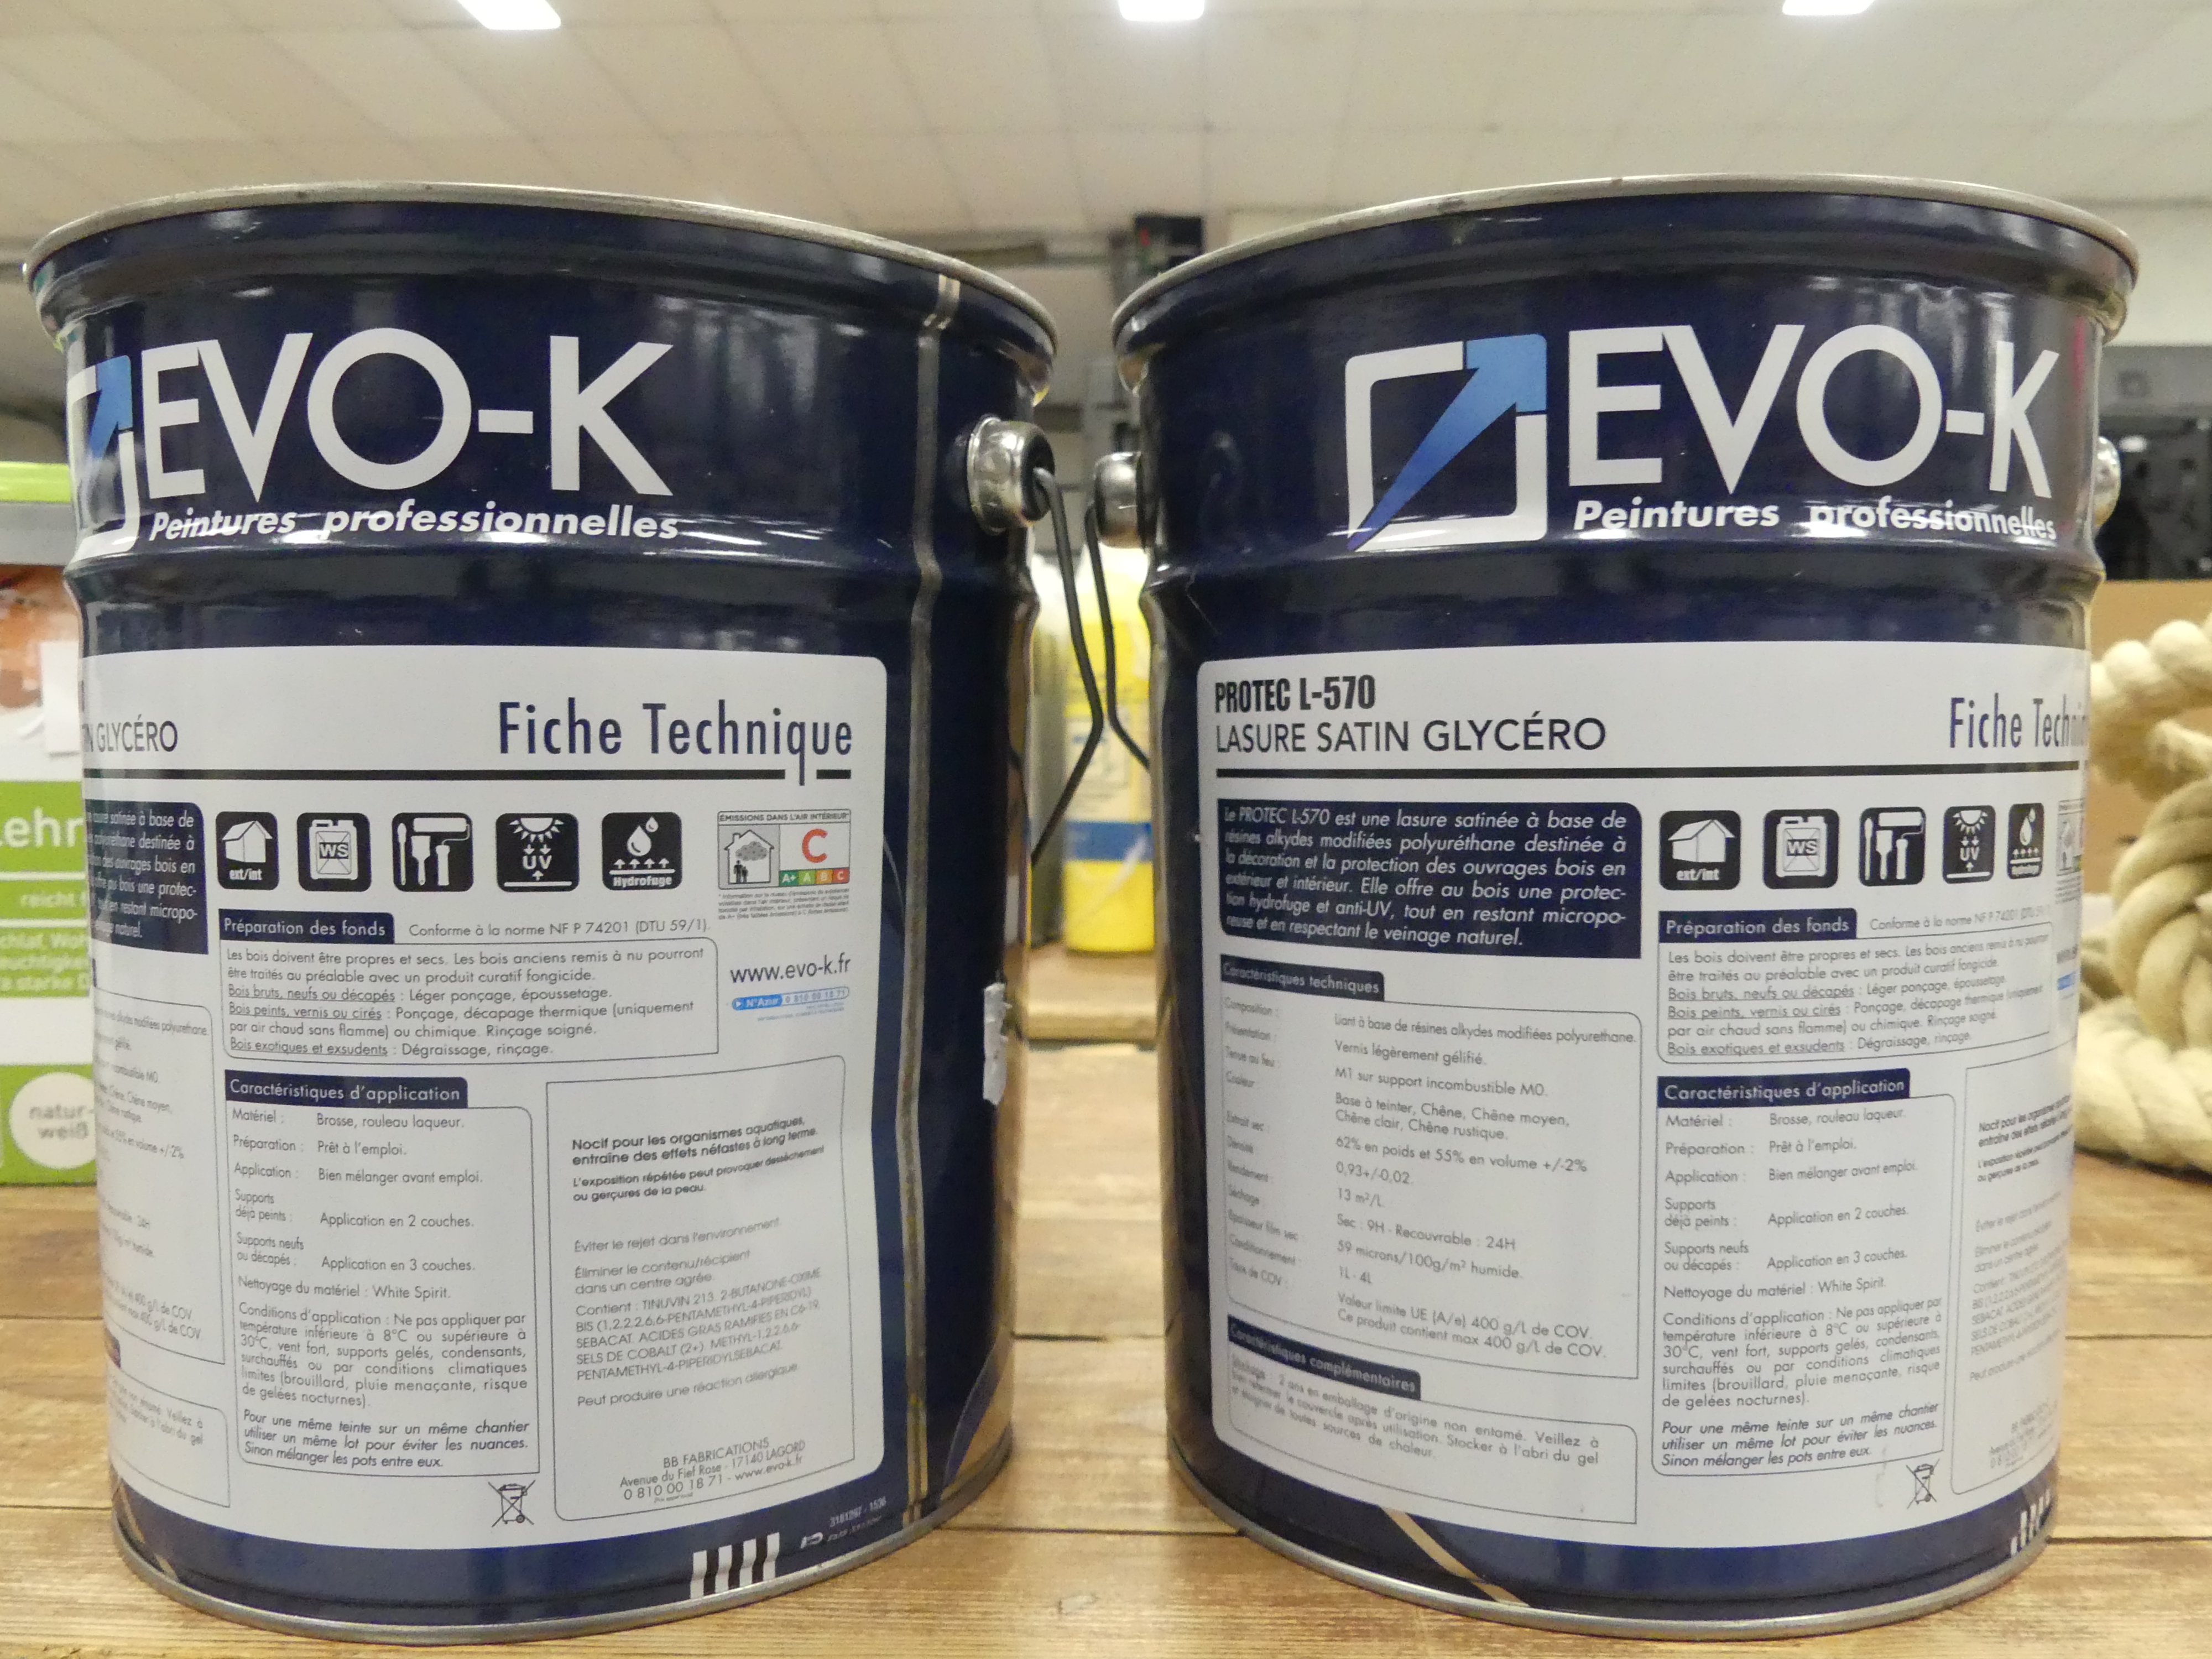 2x Devo-K lak glycerine Protec L-570, 4 liter